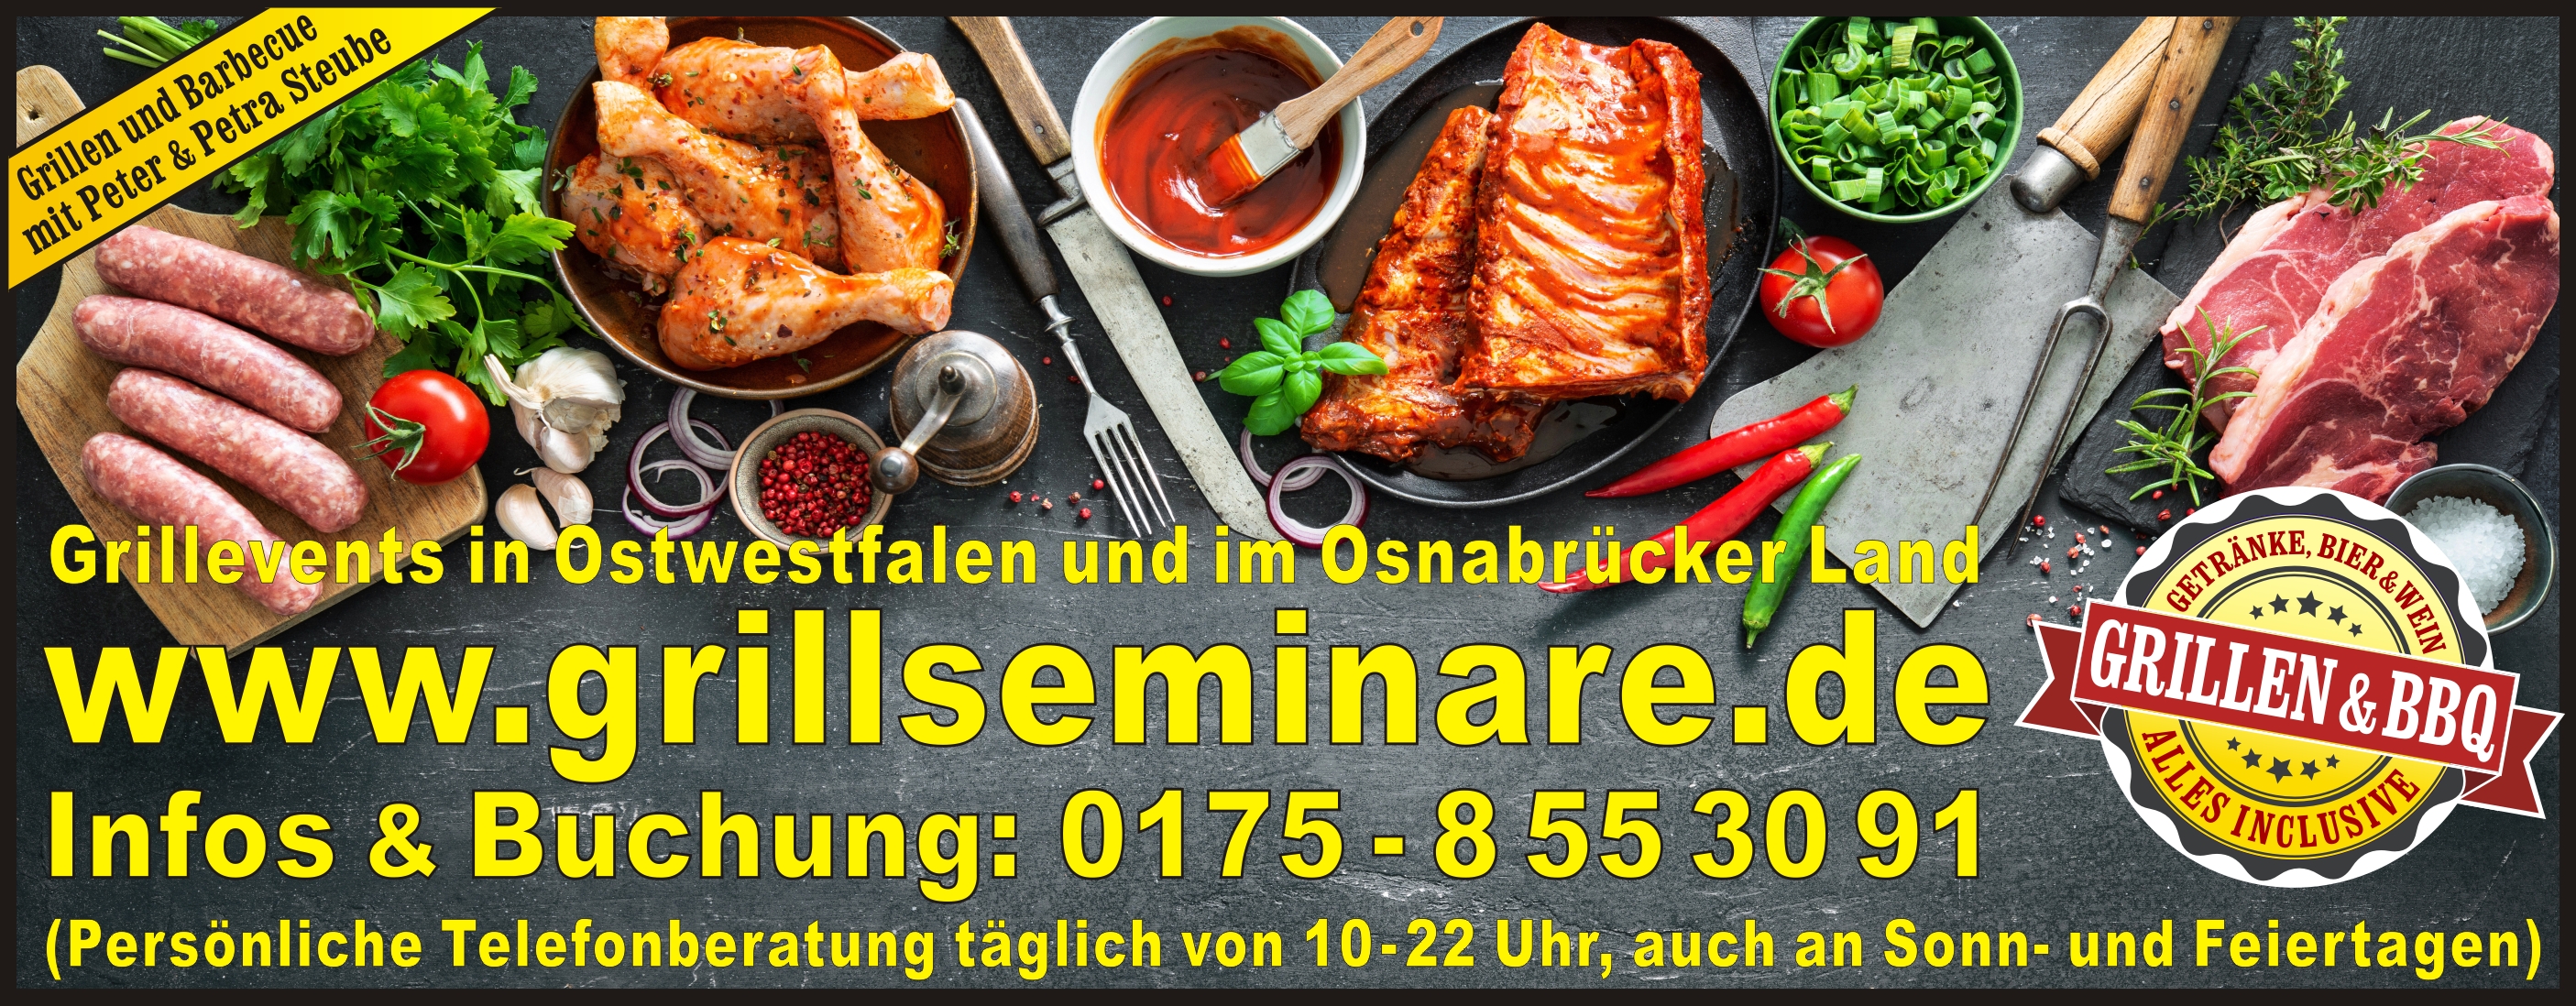 Grillkurse | Größte Terminauswahl | Informiere dich hier! | Gourmetfleisch | Einzigartige Grillkurse in der Nähe von Osnabrück, Bielefeld, Herford, Minden...